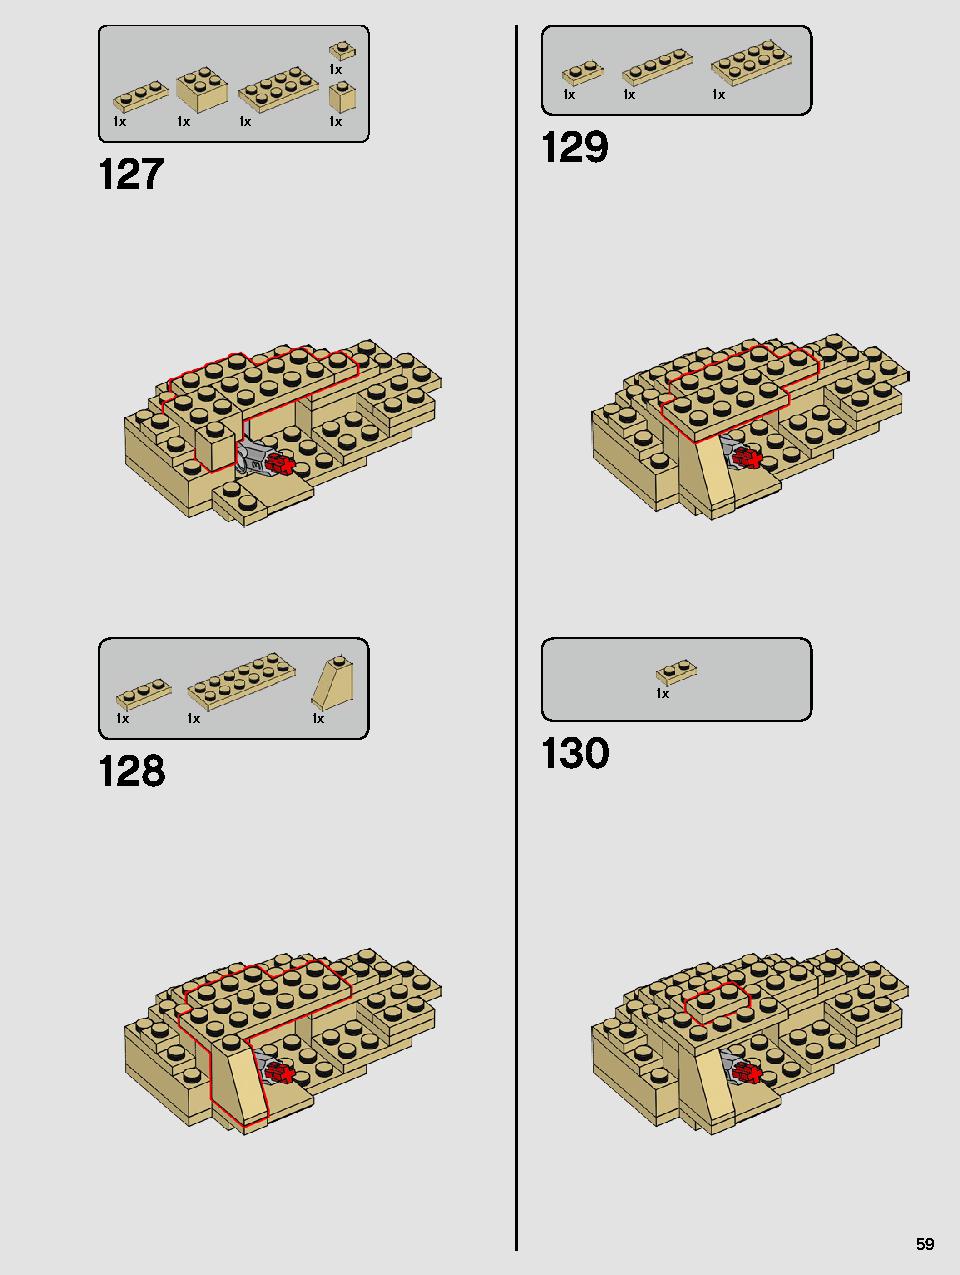 ヨーダ™ 75255 レゴの商品情報 レゴの説明書・組立方法 59 page